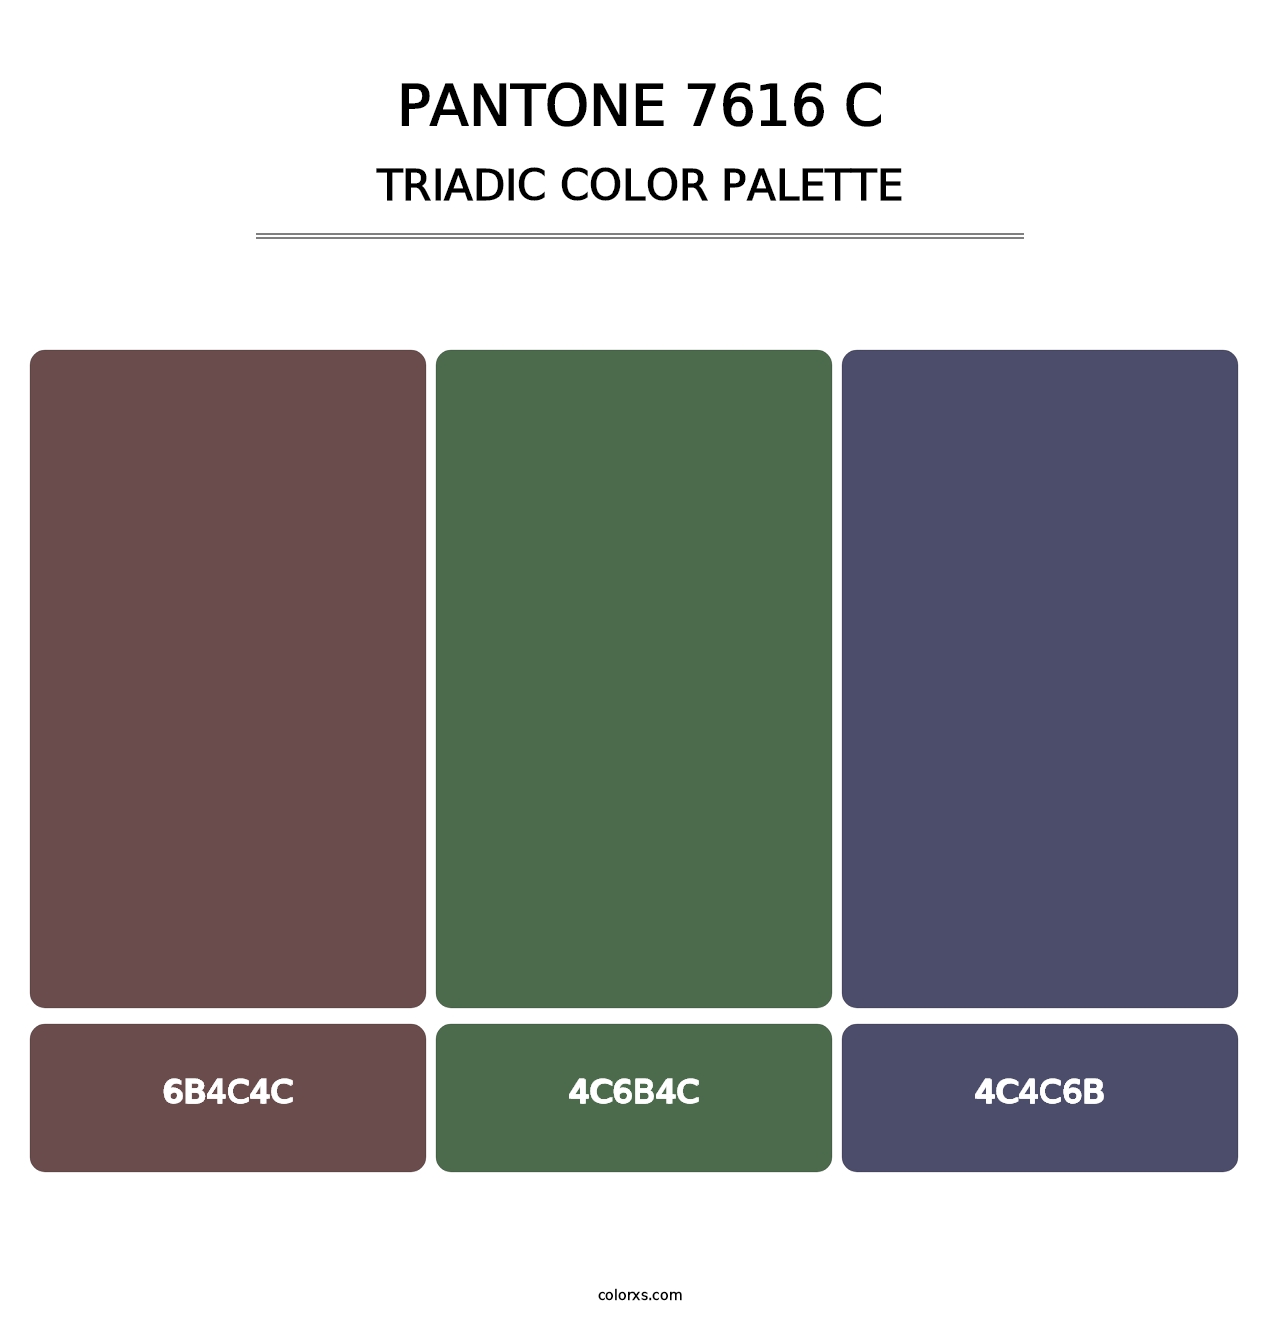 PANTONE 7616 C - Triadic Color Palette